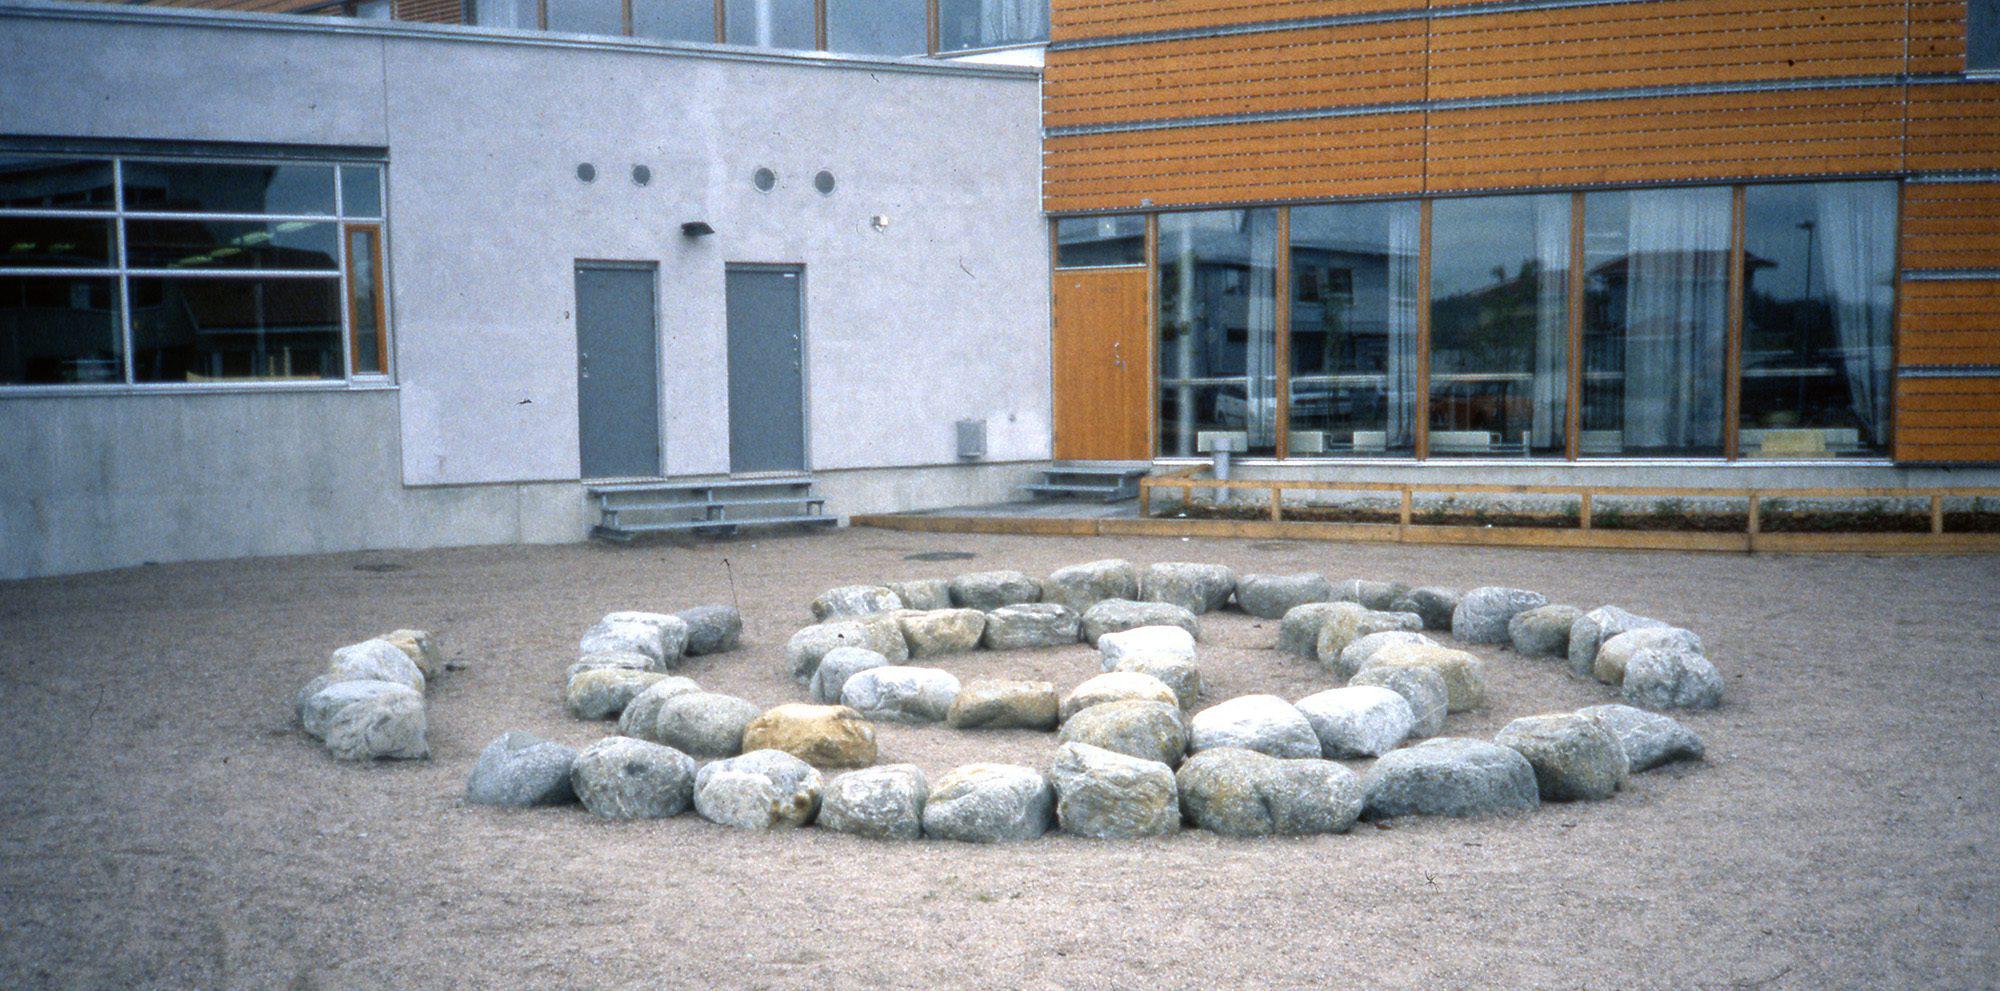 Koulun pihalla on spiraalinmuotoinen kivipolku, joka johtaa spiraalin keskelle. Kivet ovat suuria, joten niillä voi istuskella.